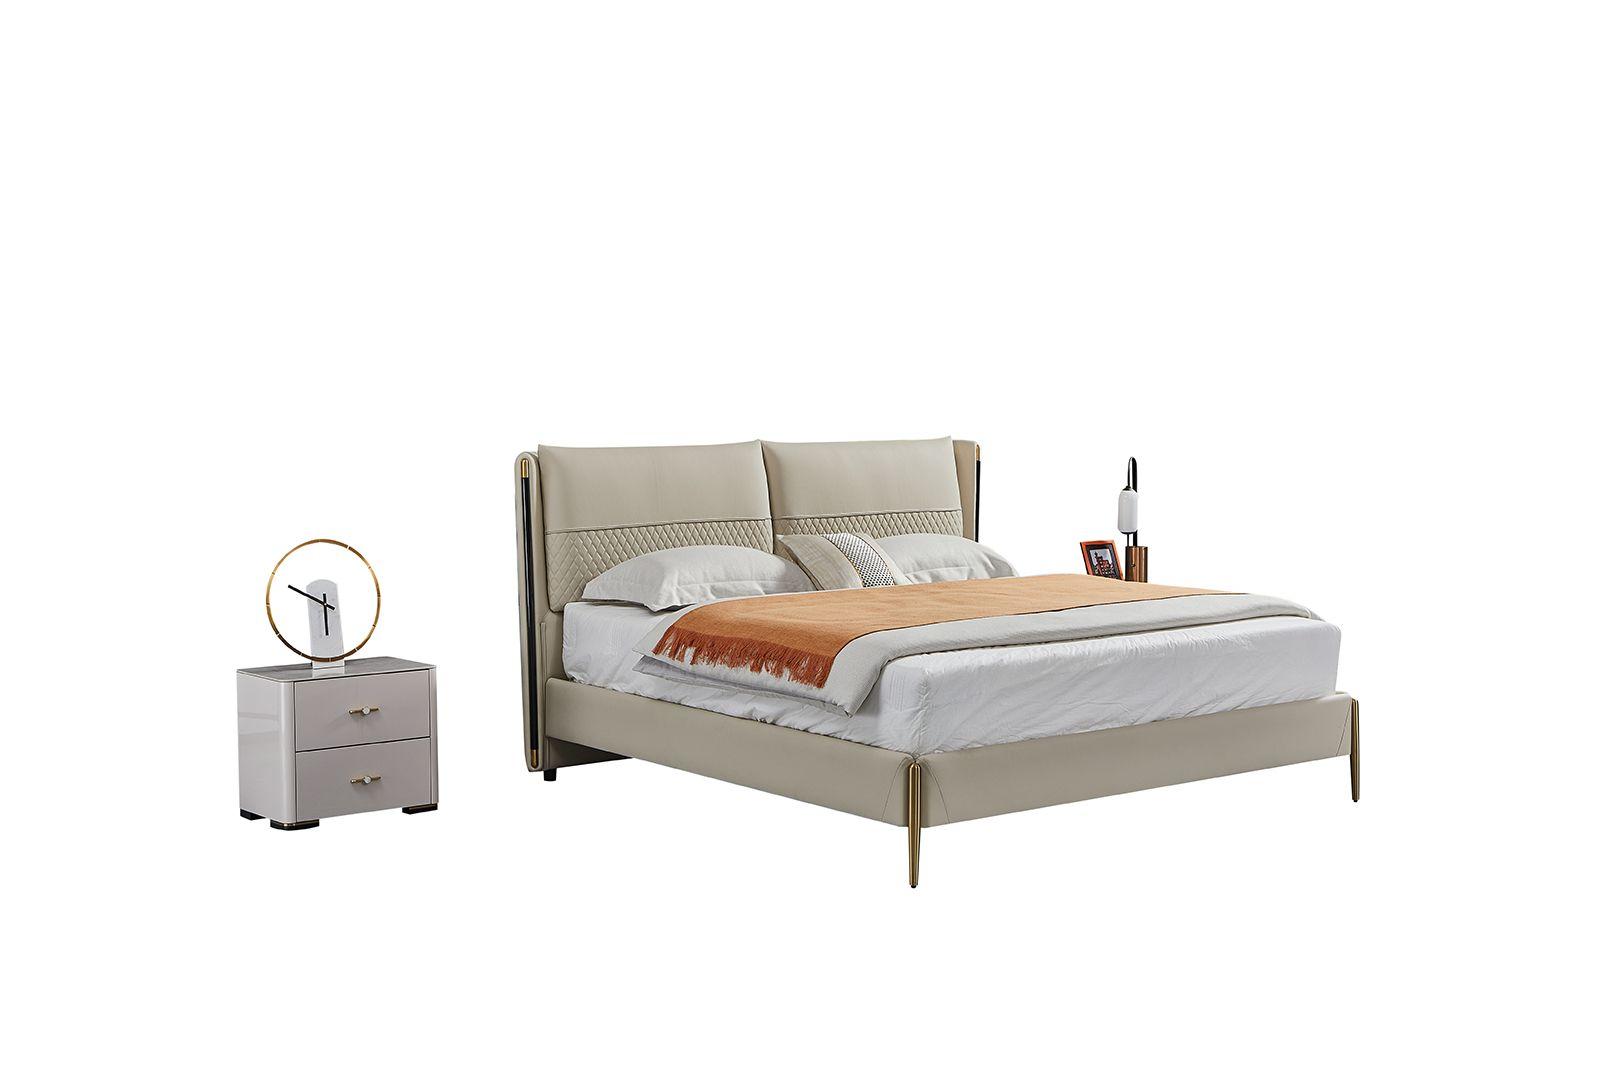 Contemporary, Modern Platform Bedroom Set B-Y2010-Q / NS-Y2010 B-Y2010-Q-3PC in Gray Genuine Leather